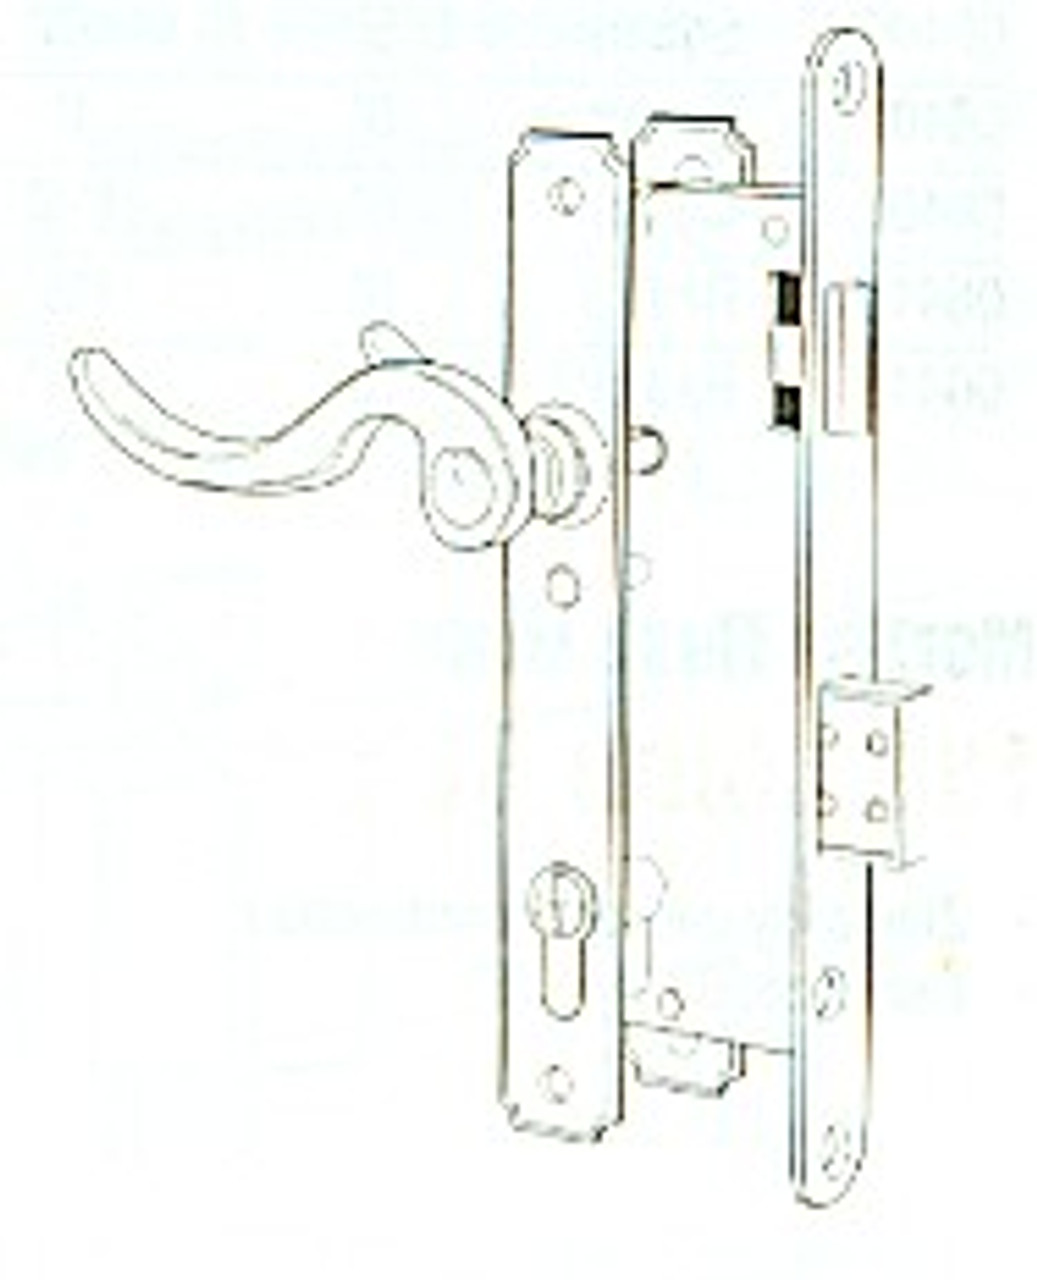 Brass Atrium Door Lever Lockset